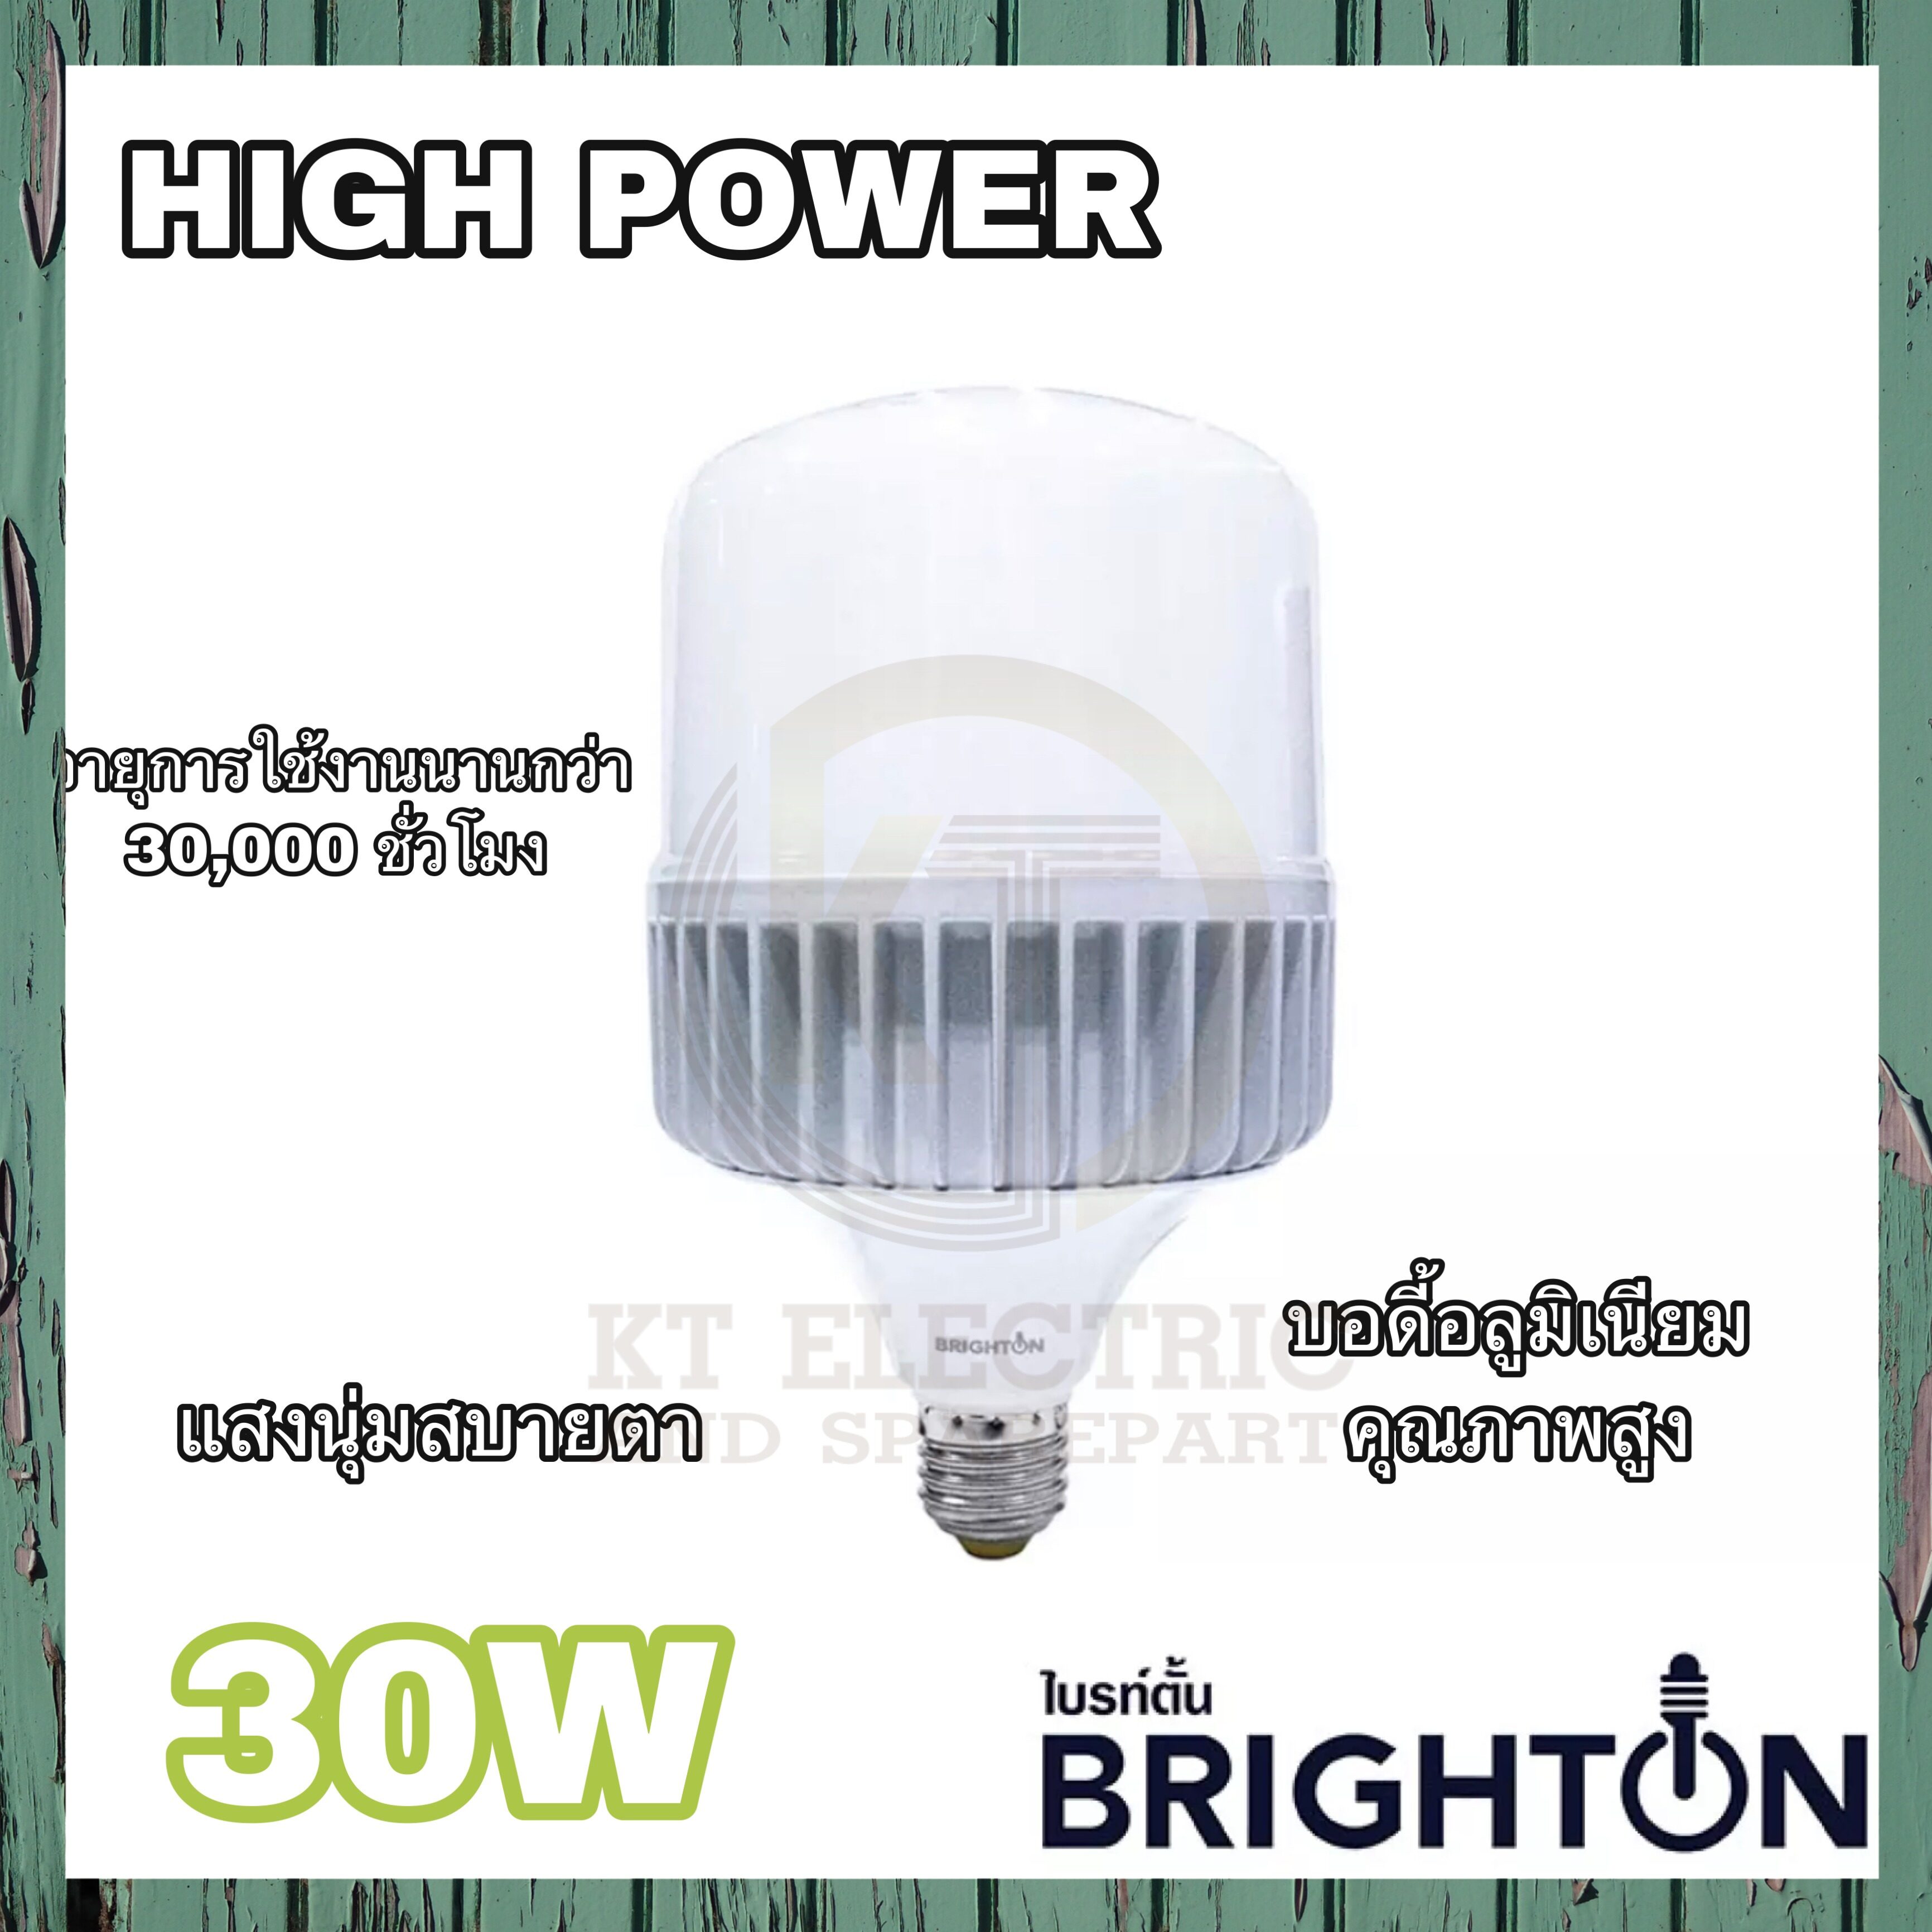 BRIGHTON หลอดไฟ ไฮเพาเวอร์ ไฮวัตต์ 30W 40W 50W LED  บอดี้อลูมิเนียมคุณภาพสูง แสงสีขาว แสงสีขาว หลอดไฟใหญ่ สว่างพิเศษ